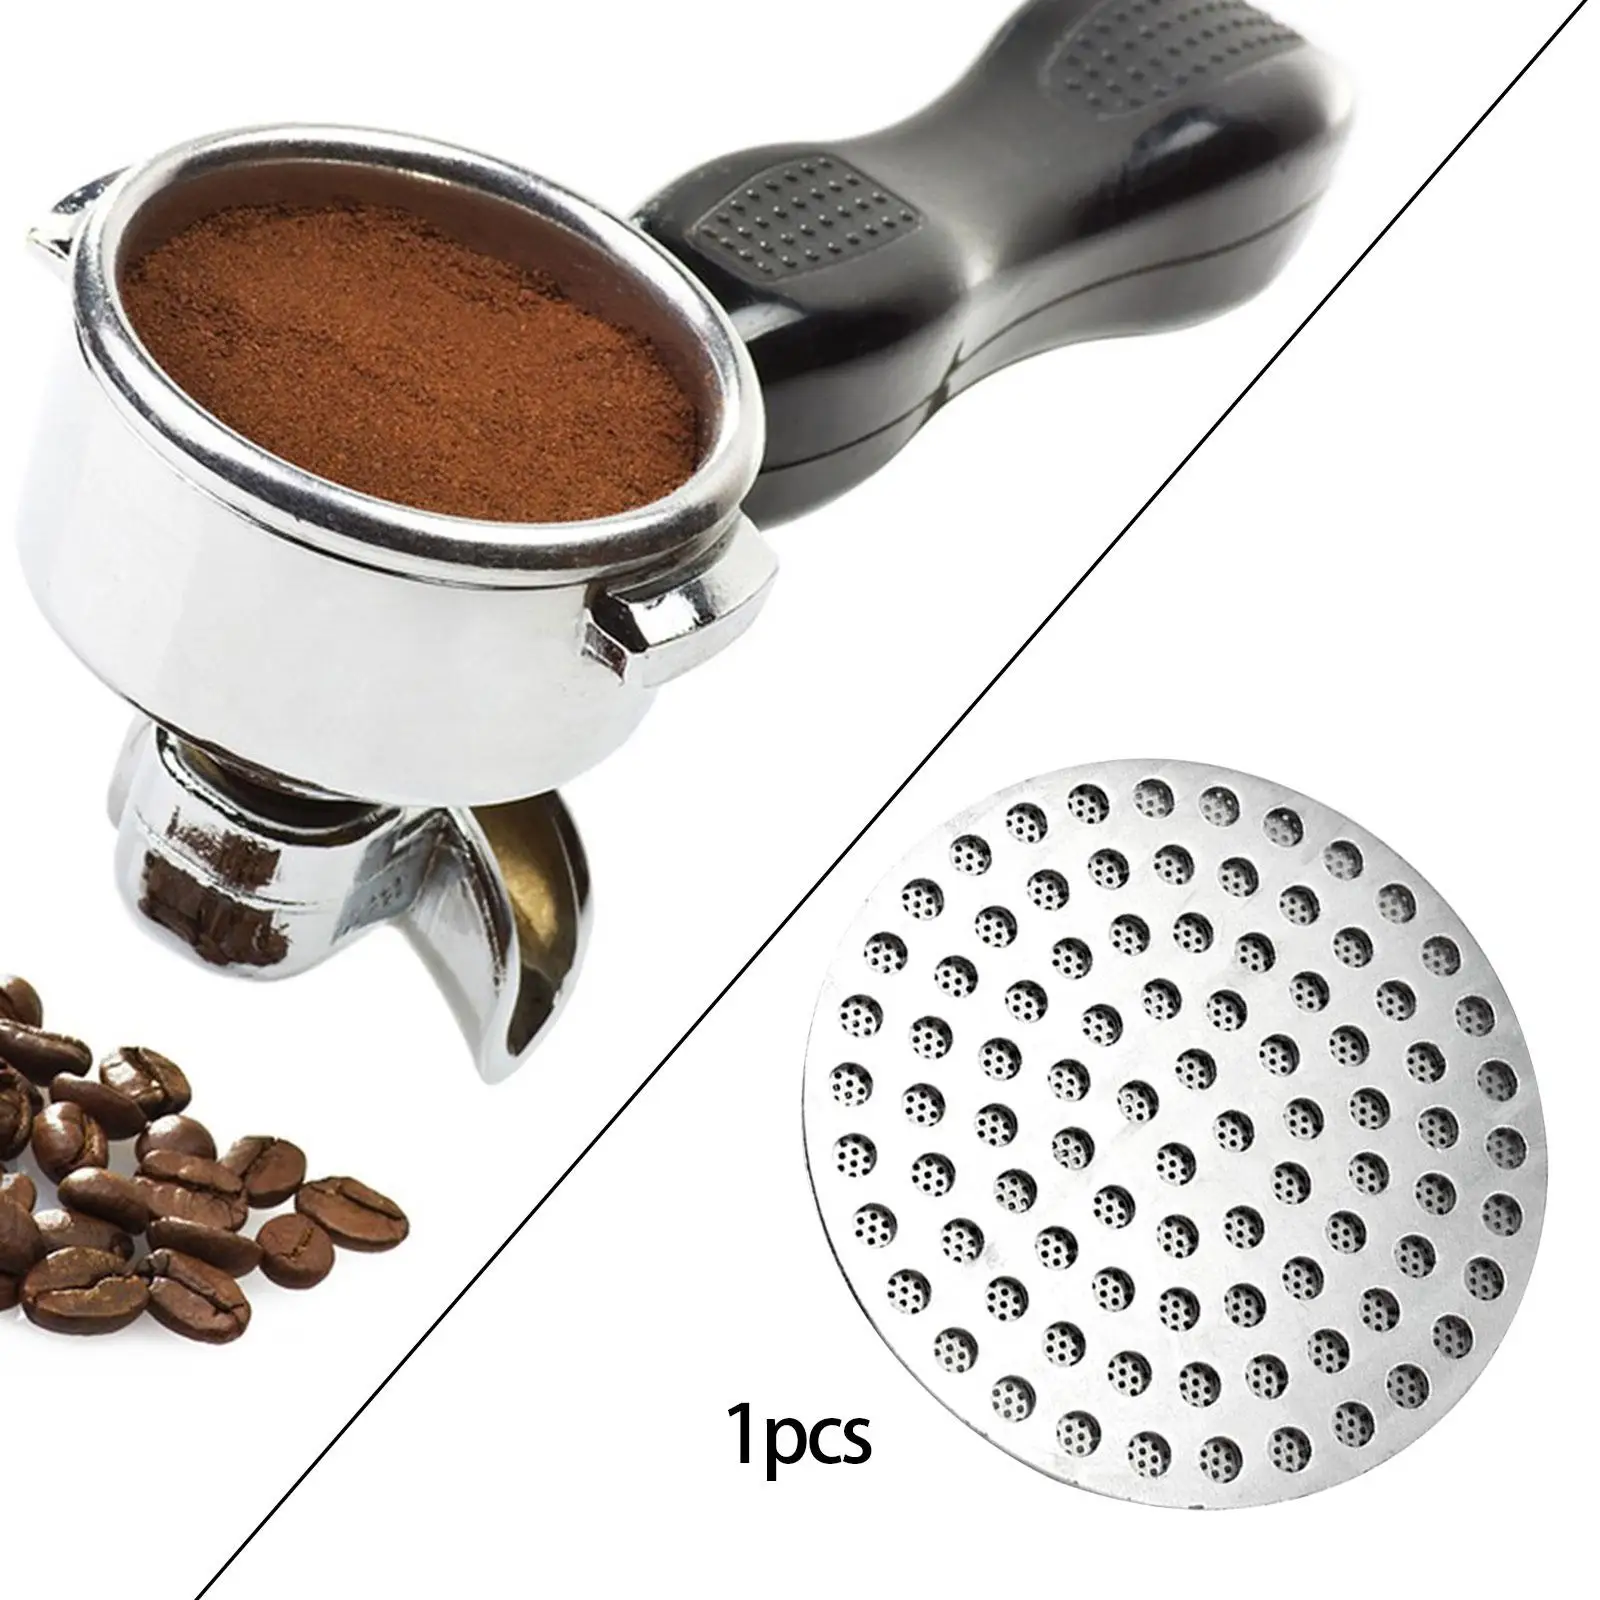 Espresso Portafilter Mesh Filter for Coffee Maker for Espresso Portafilter Filter Basket Bottomless Portafilter Filter Basket